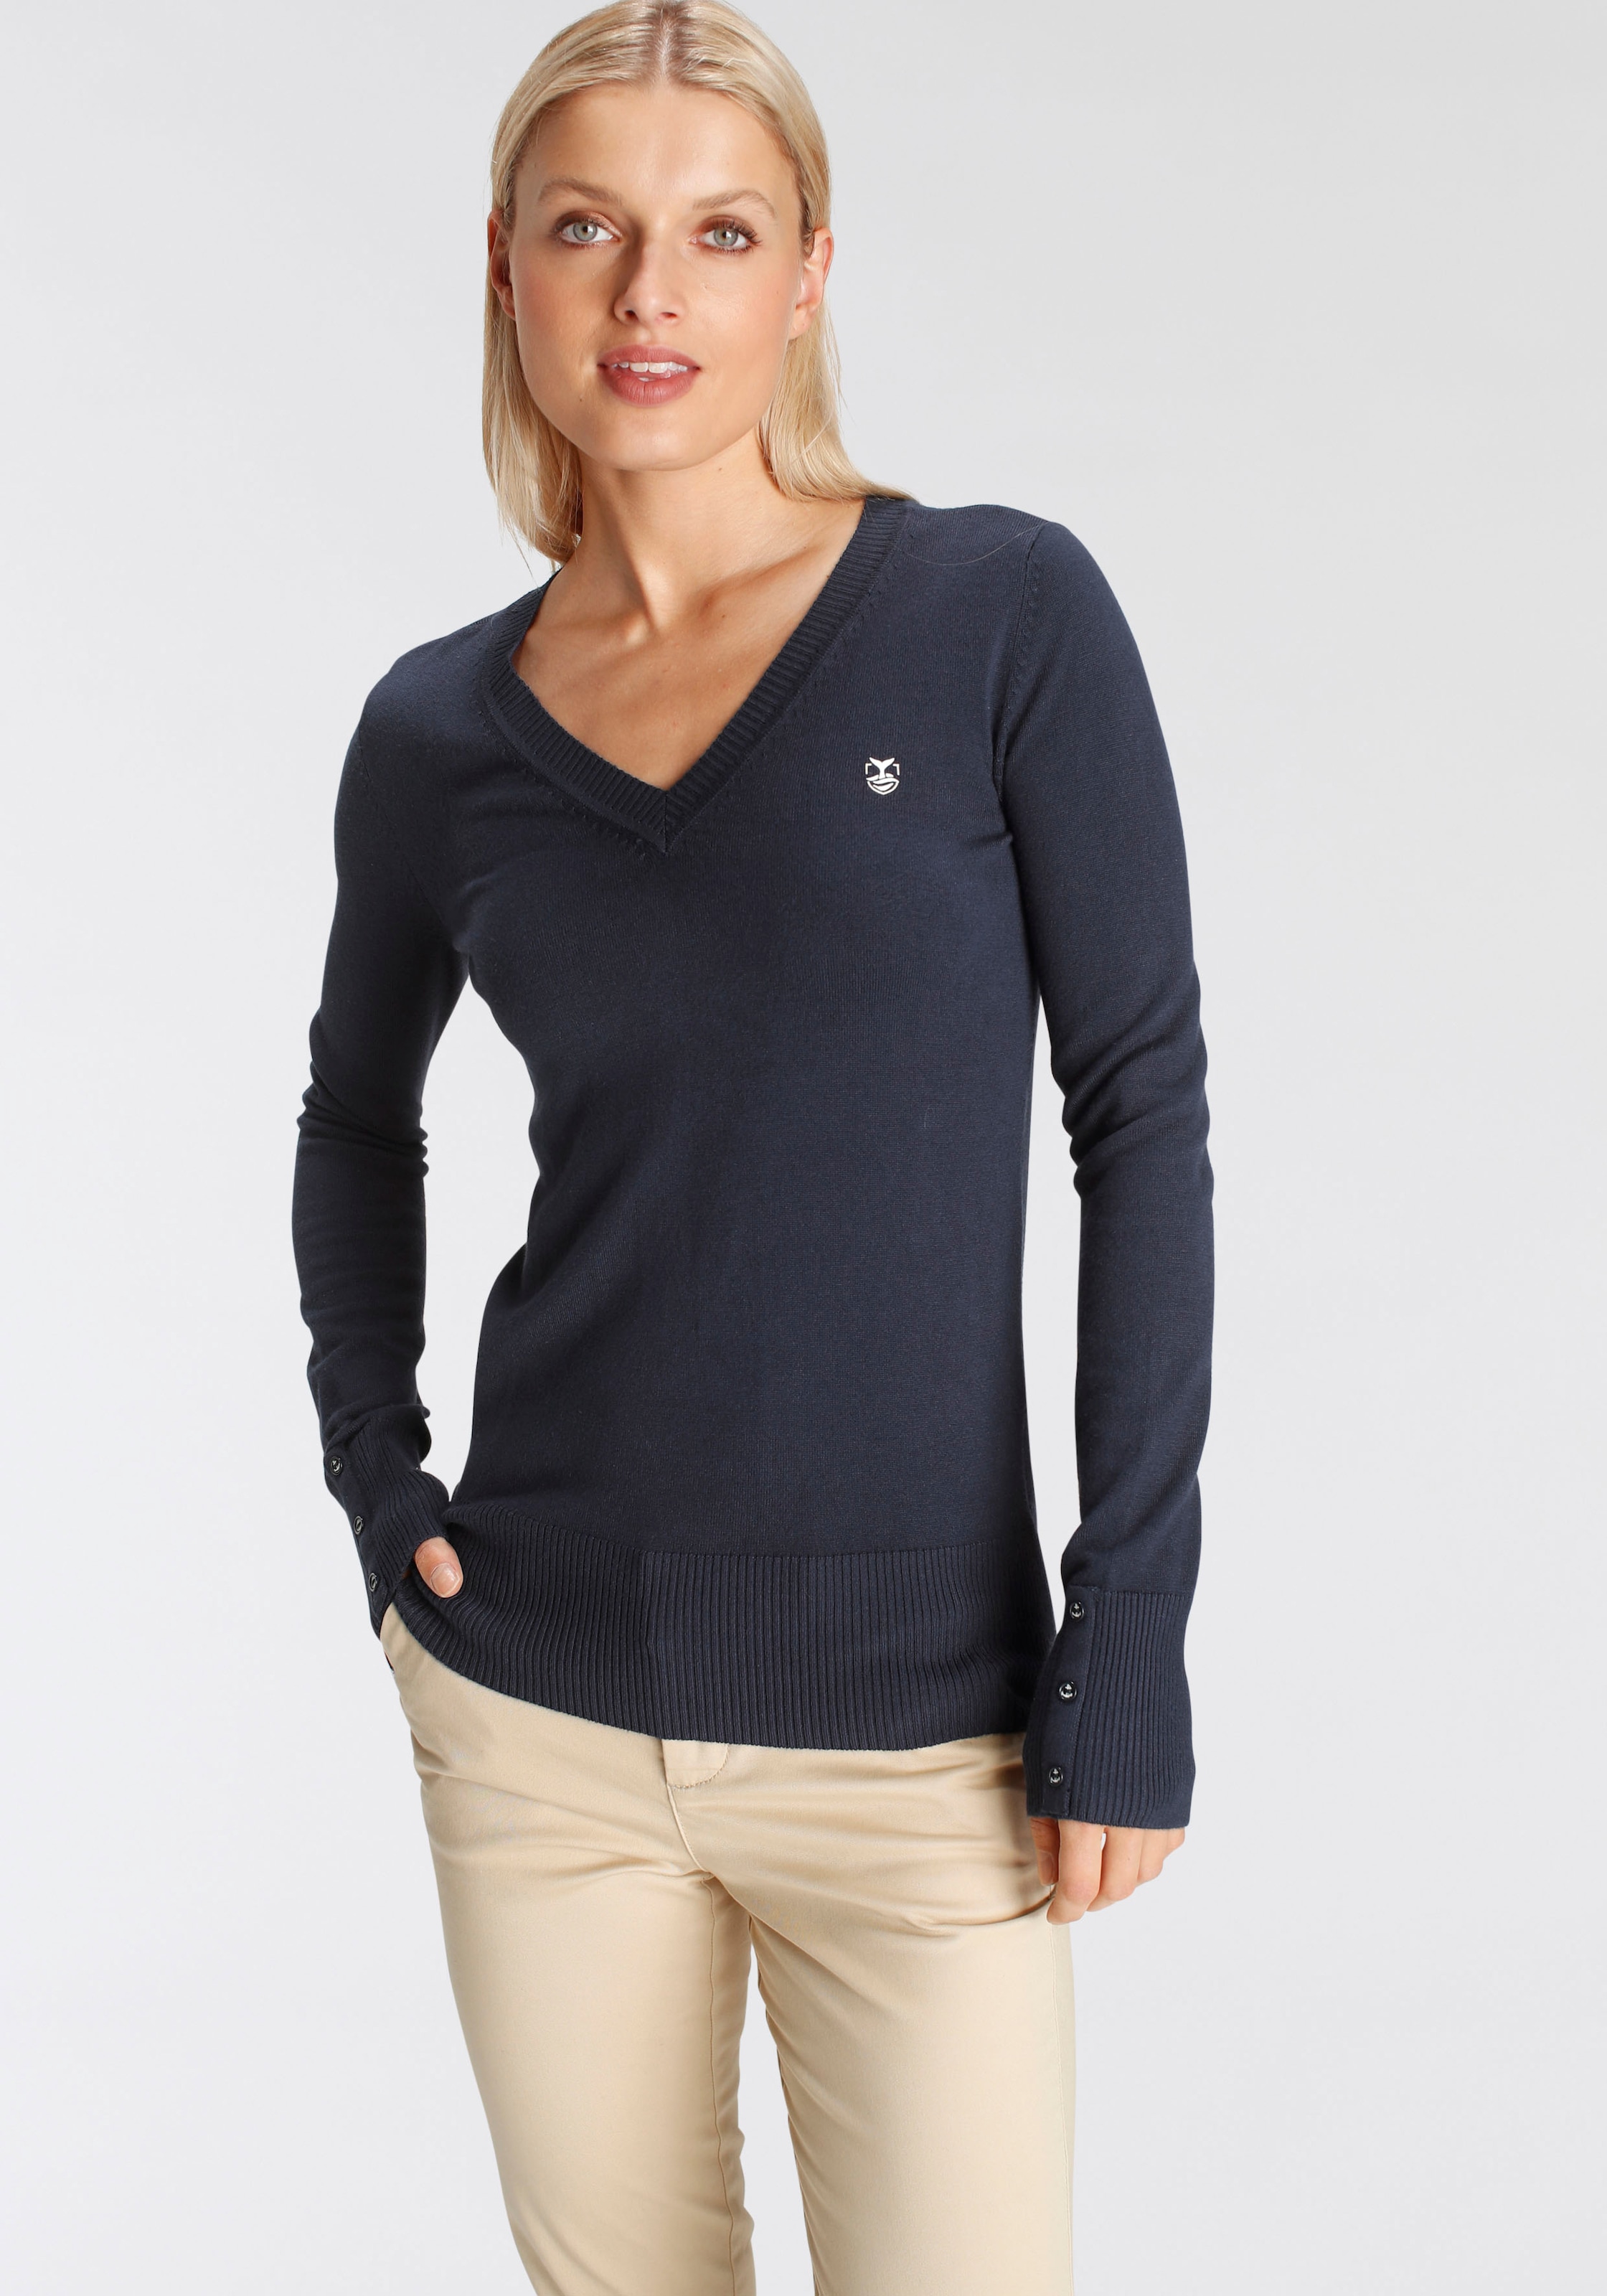 DELMAO V-Ausschnitt-Pullover, mit kleinem bei Brust Logodruck der NEUE kaufen OTTO MARKE! - auf